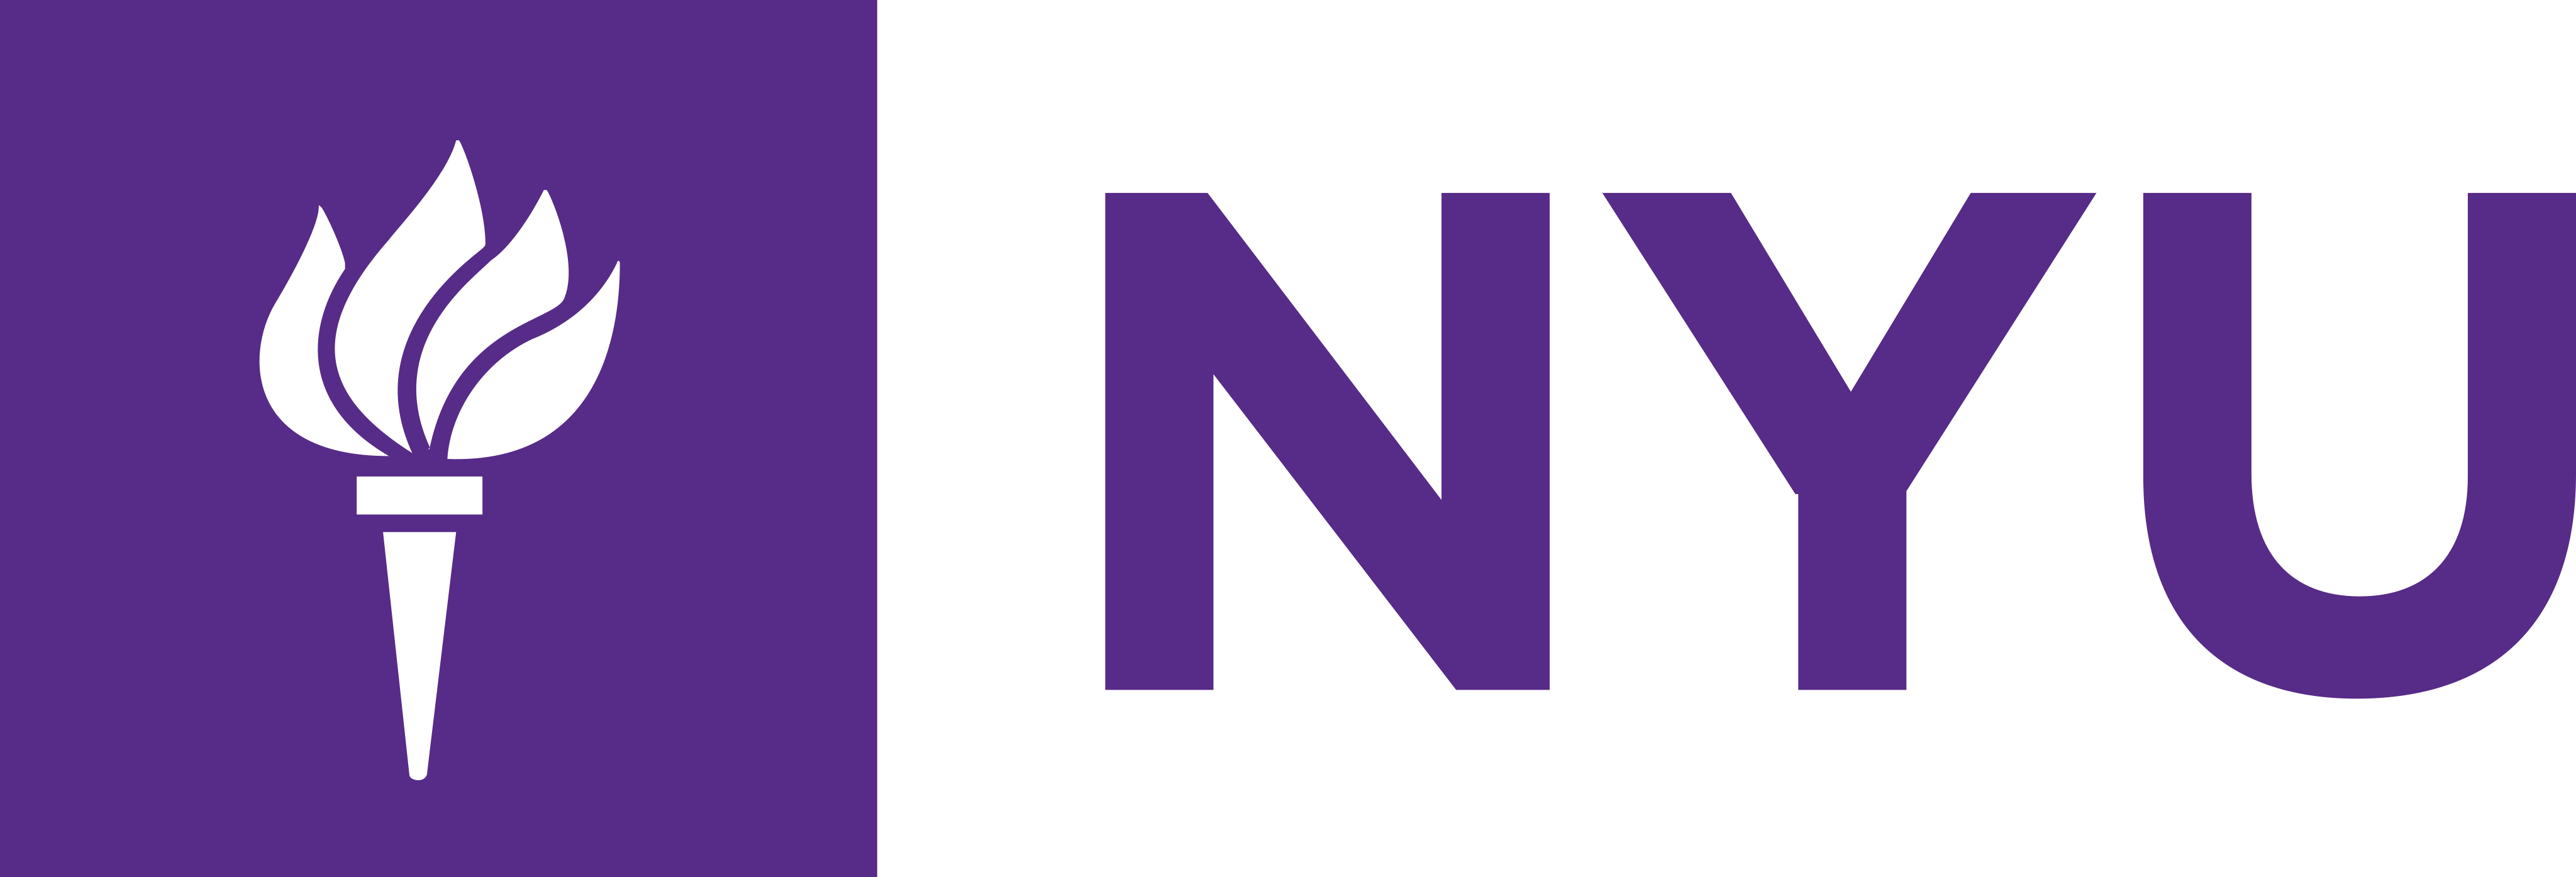 Логотип Нью-Йоркского университета – Логотип Нью-Йоркского университета – PNG и вектор – Скачать логотип